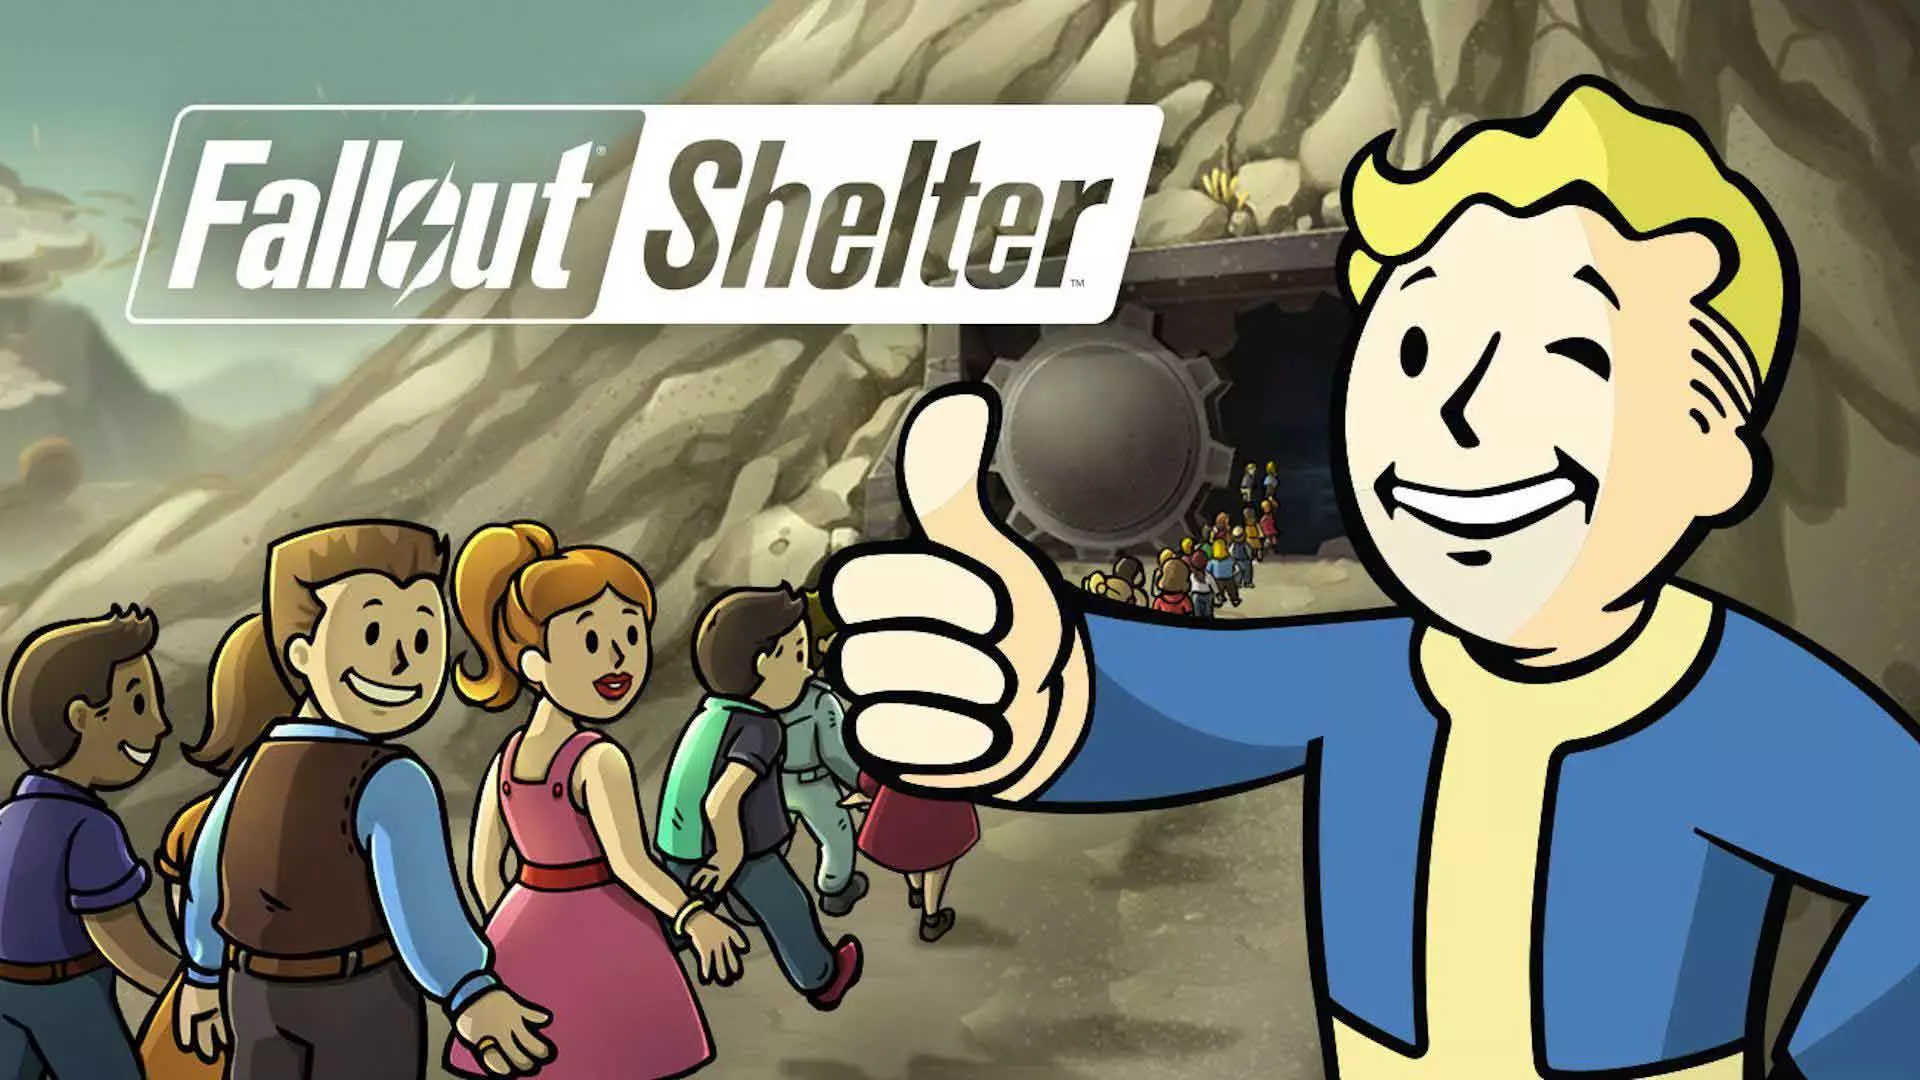 افزایش درآمد و تعداد بازیکنان Fallout Shelter پس از پخش سریال این مجموعه